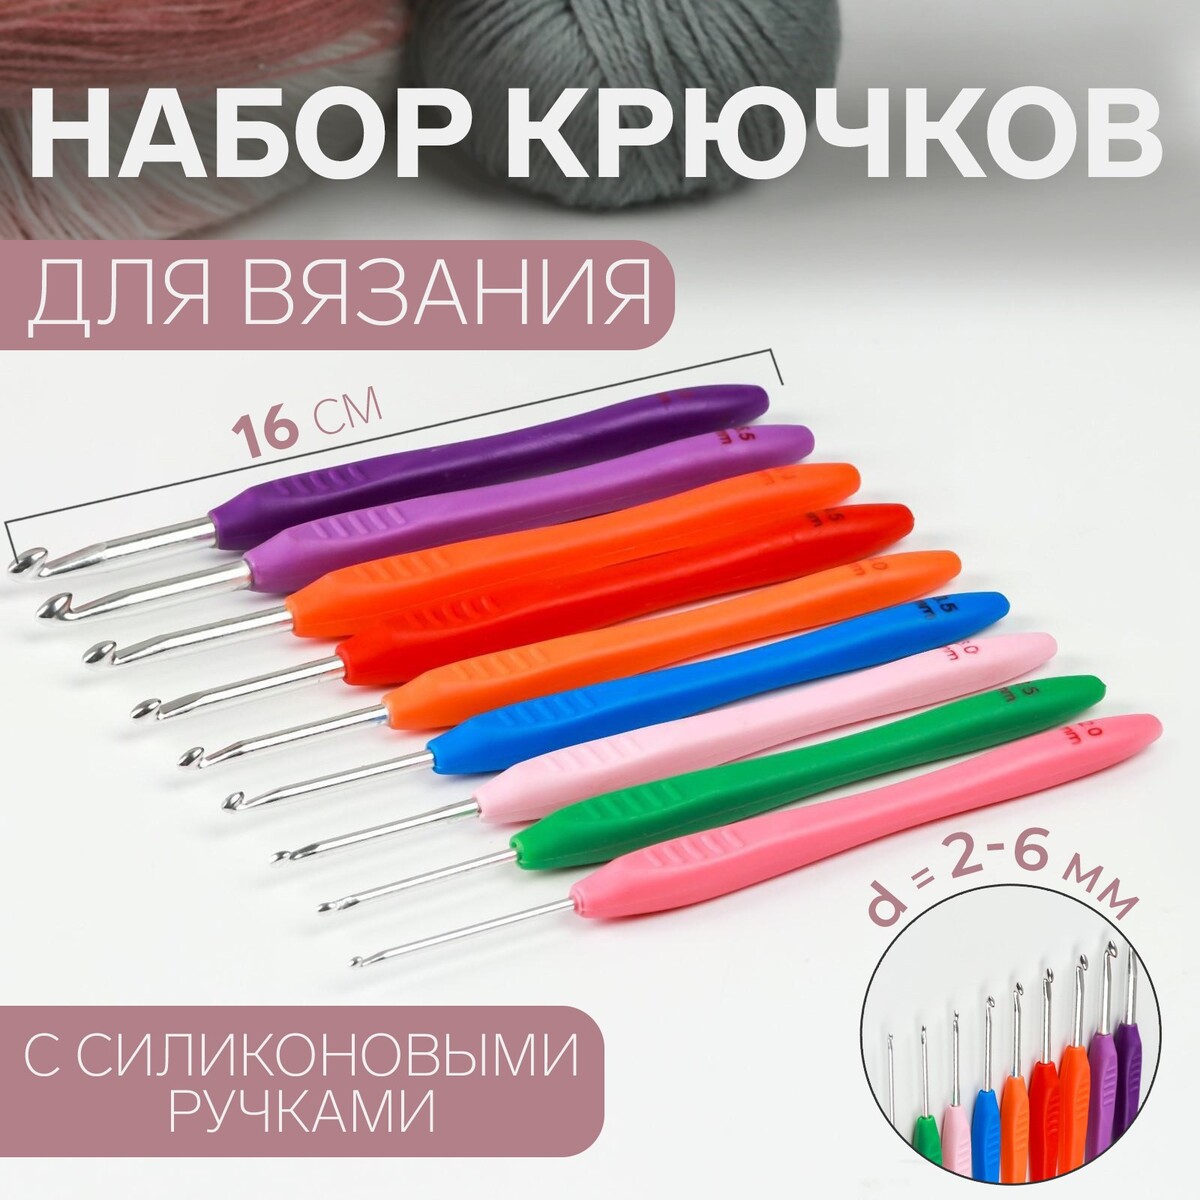 Набор крючков для вязания, d = 2-6 мм, 16 см, 9 шт, цвет разноцветный рукоделие